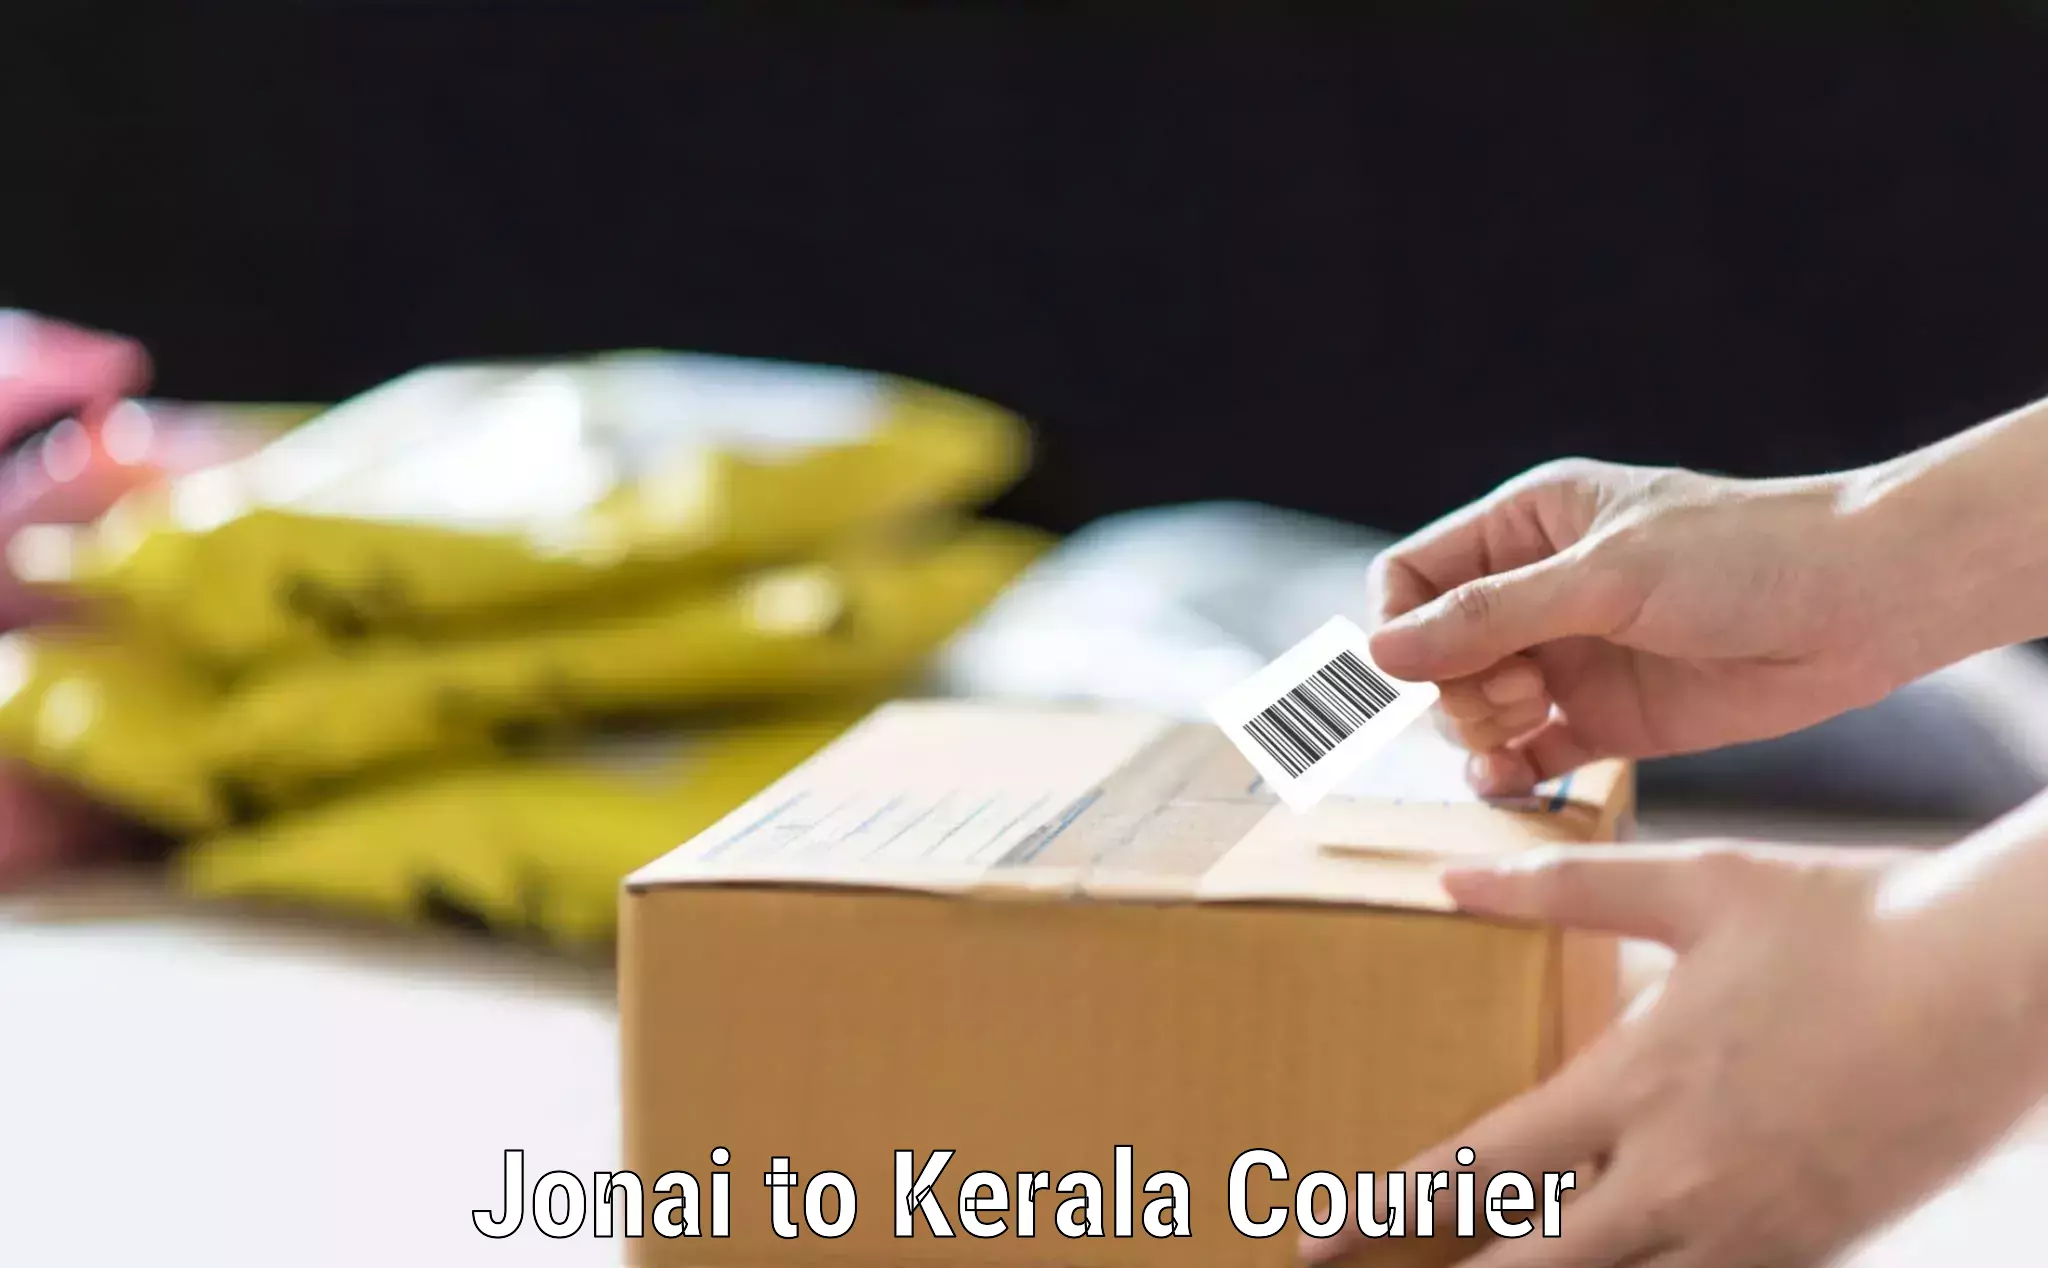 Baggage transport scheduler Jonai to Kerala